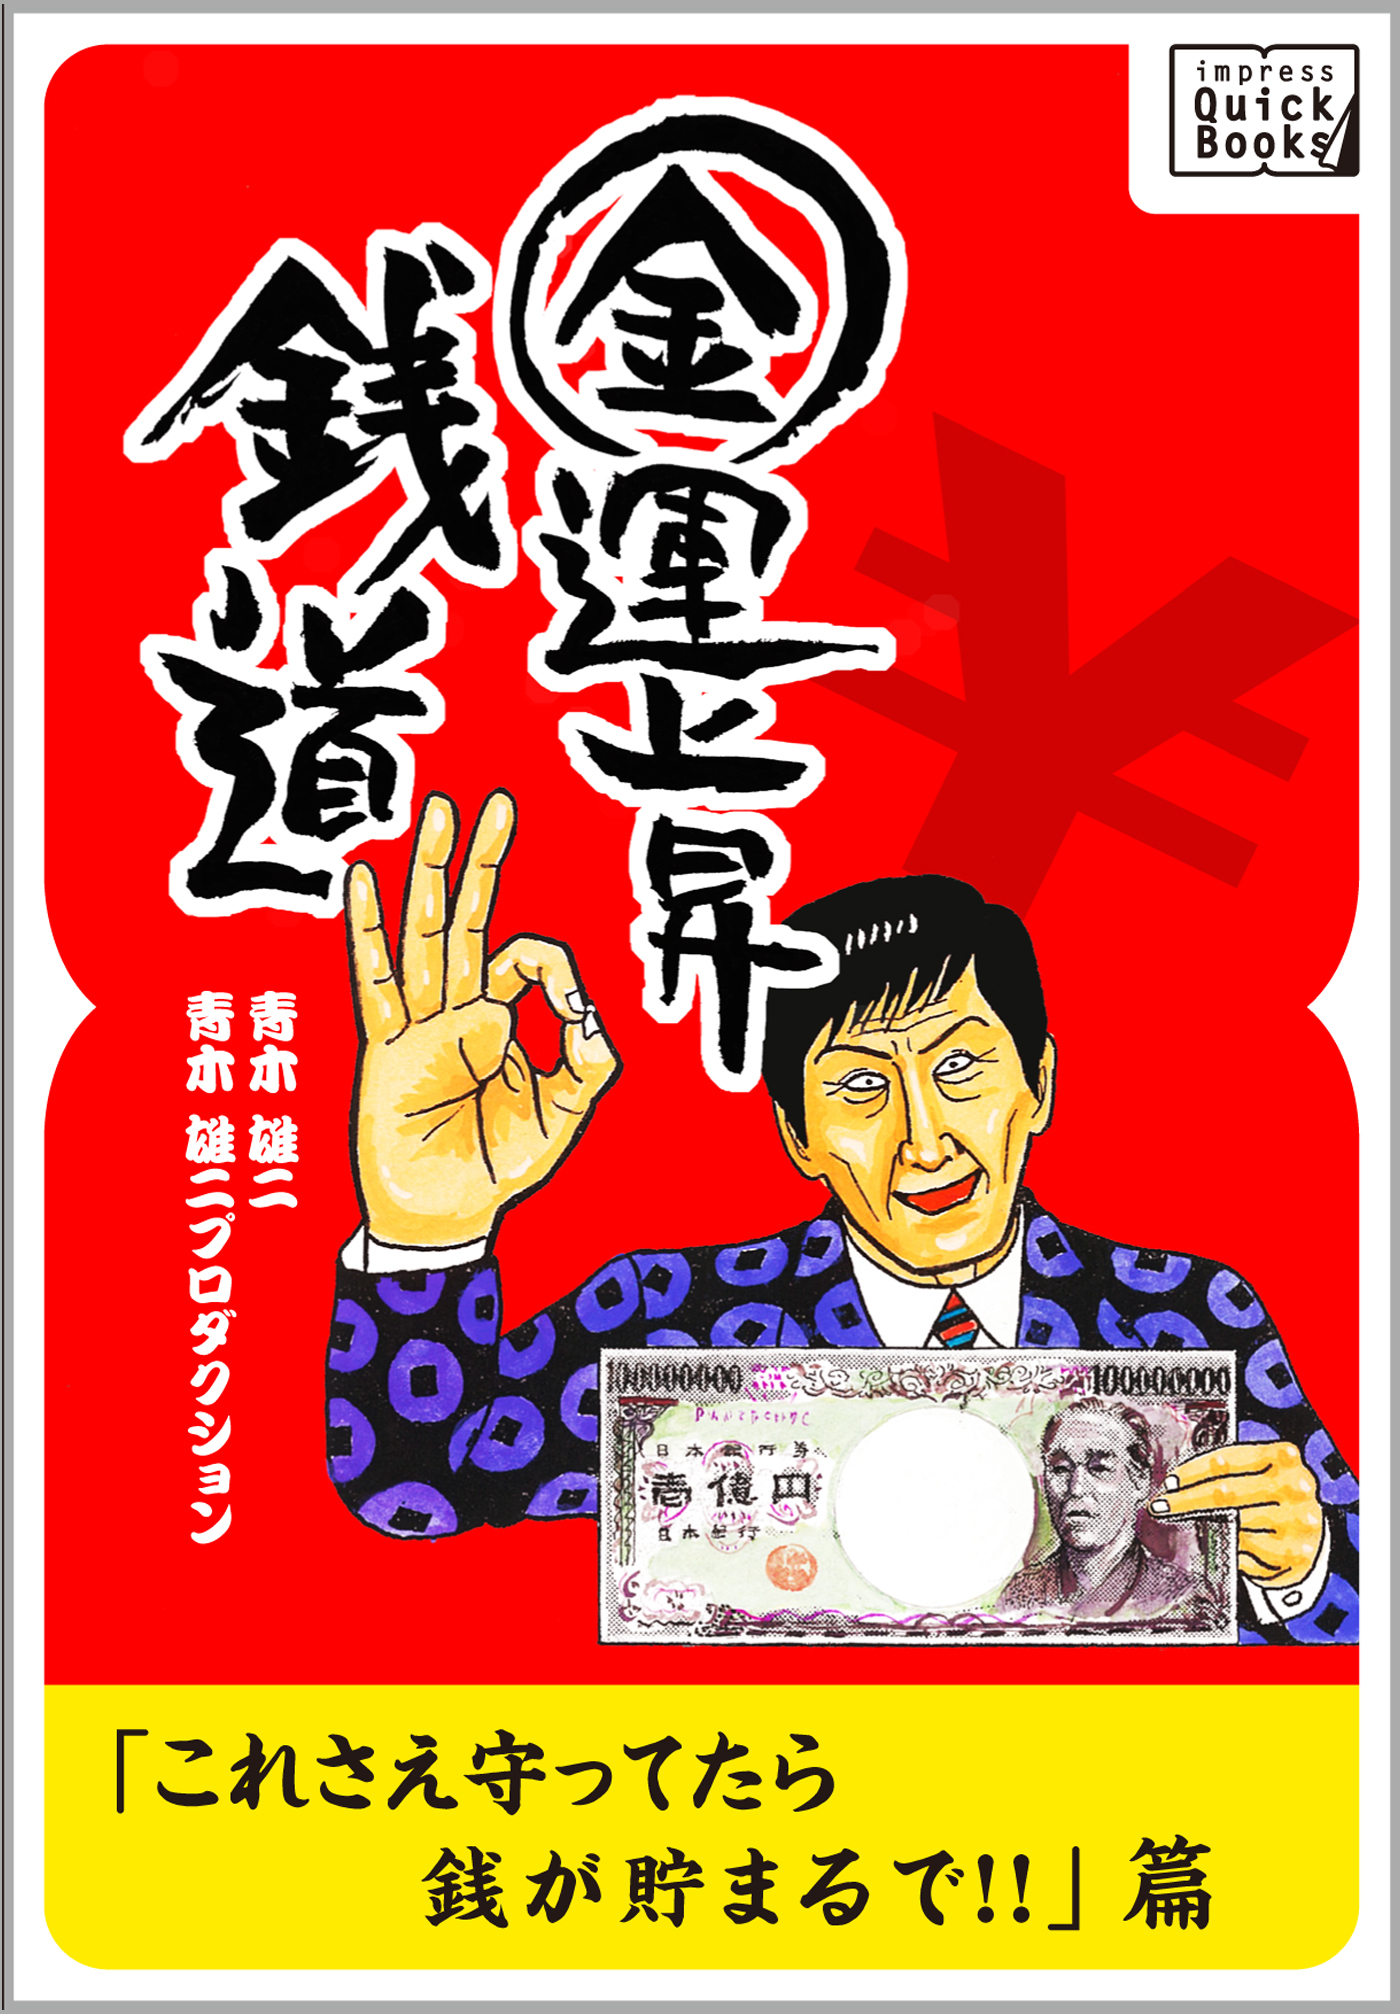 ナニワ金融道の青木雄二が説くお金コラム、 『銭道』シリーズがimpress QuickBooksより発売